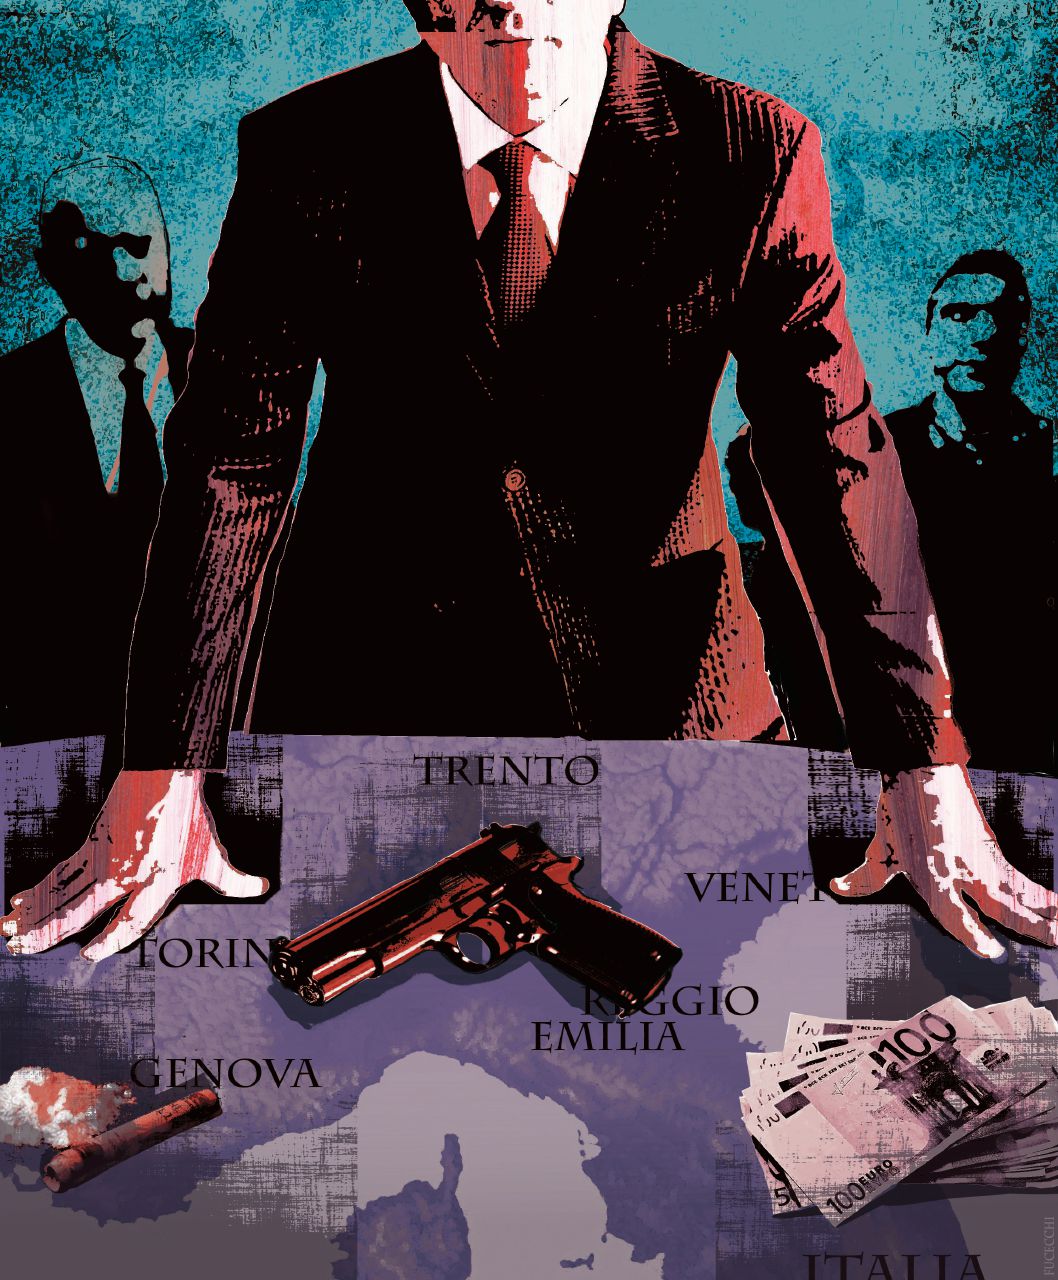 Copertina di Mafie: Roma cerca le prove, al Nord regna la ’ndrangheta